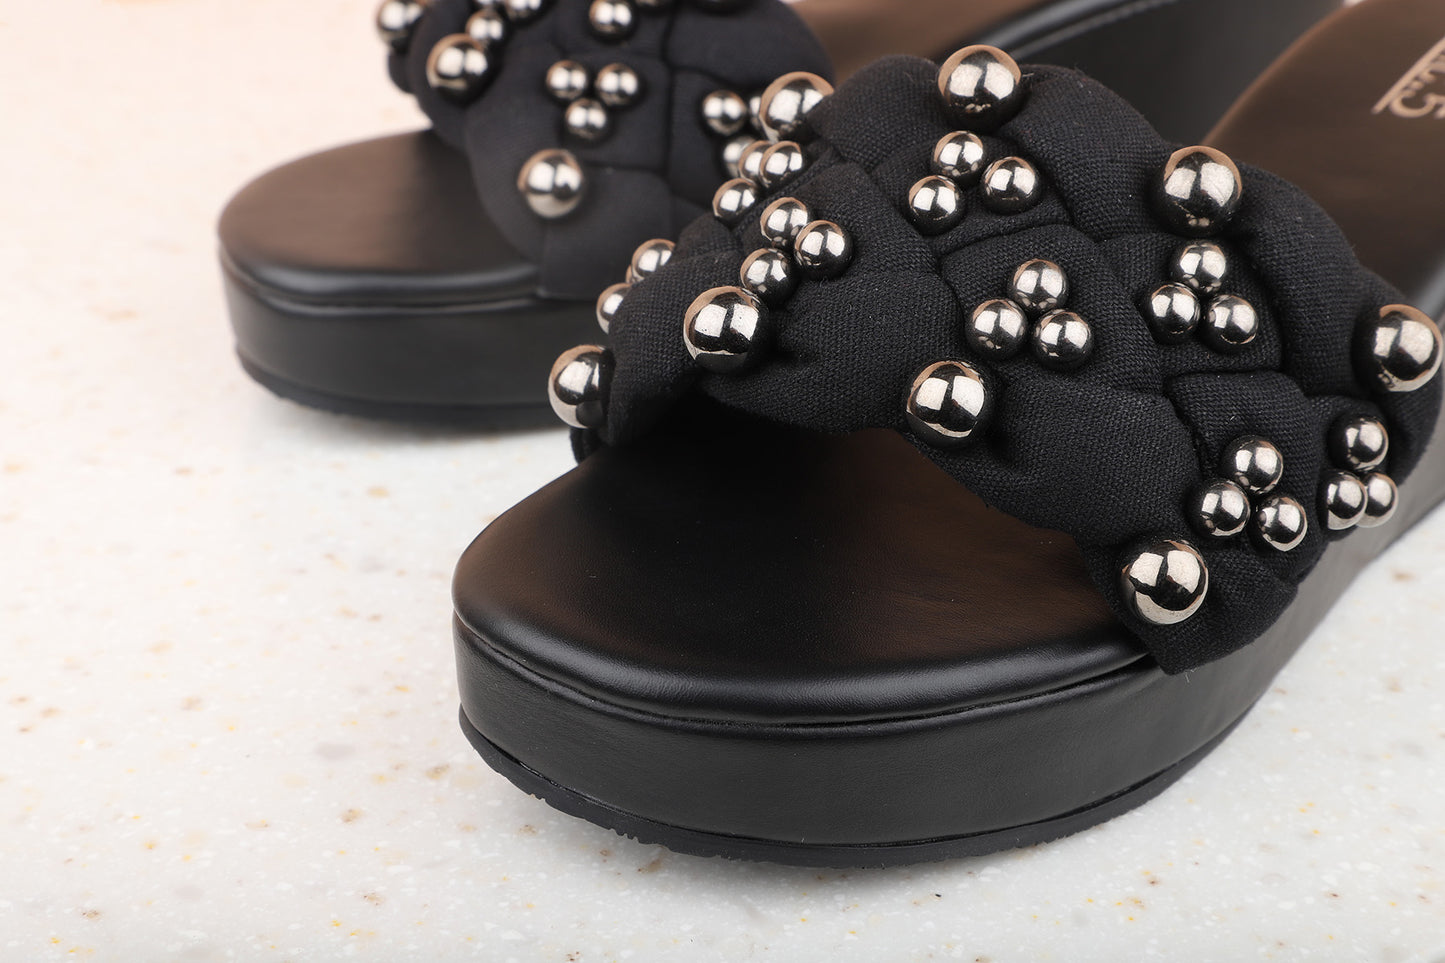 Women Black Embellished Wedge Sandals